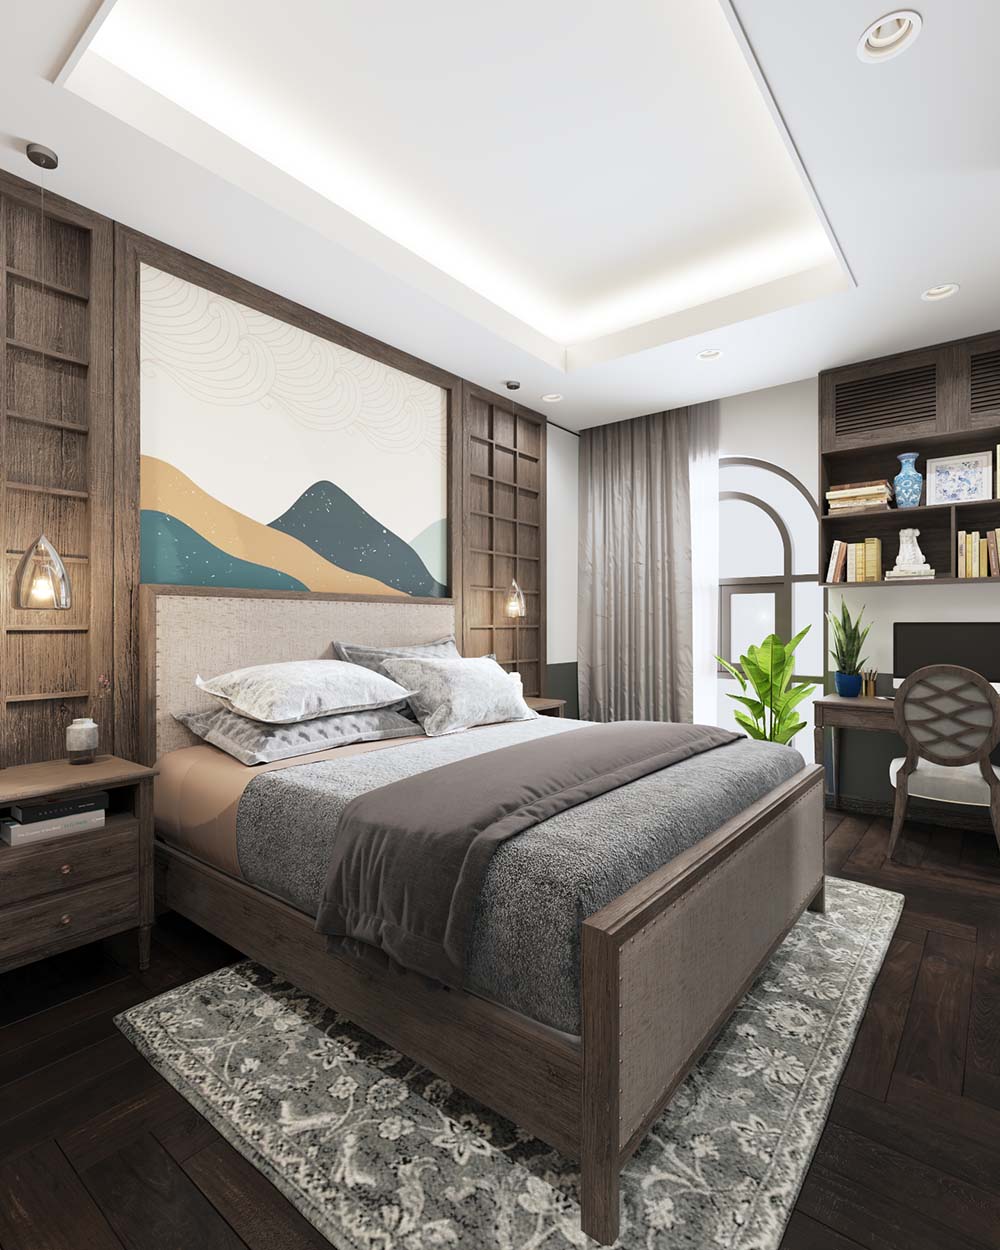 Với từng không gian, kích thước phòng ngủ khác nhau, gia chủ có thể linh hoạt lựa chọn phong cách nội thất và họa tiết hoa văn 